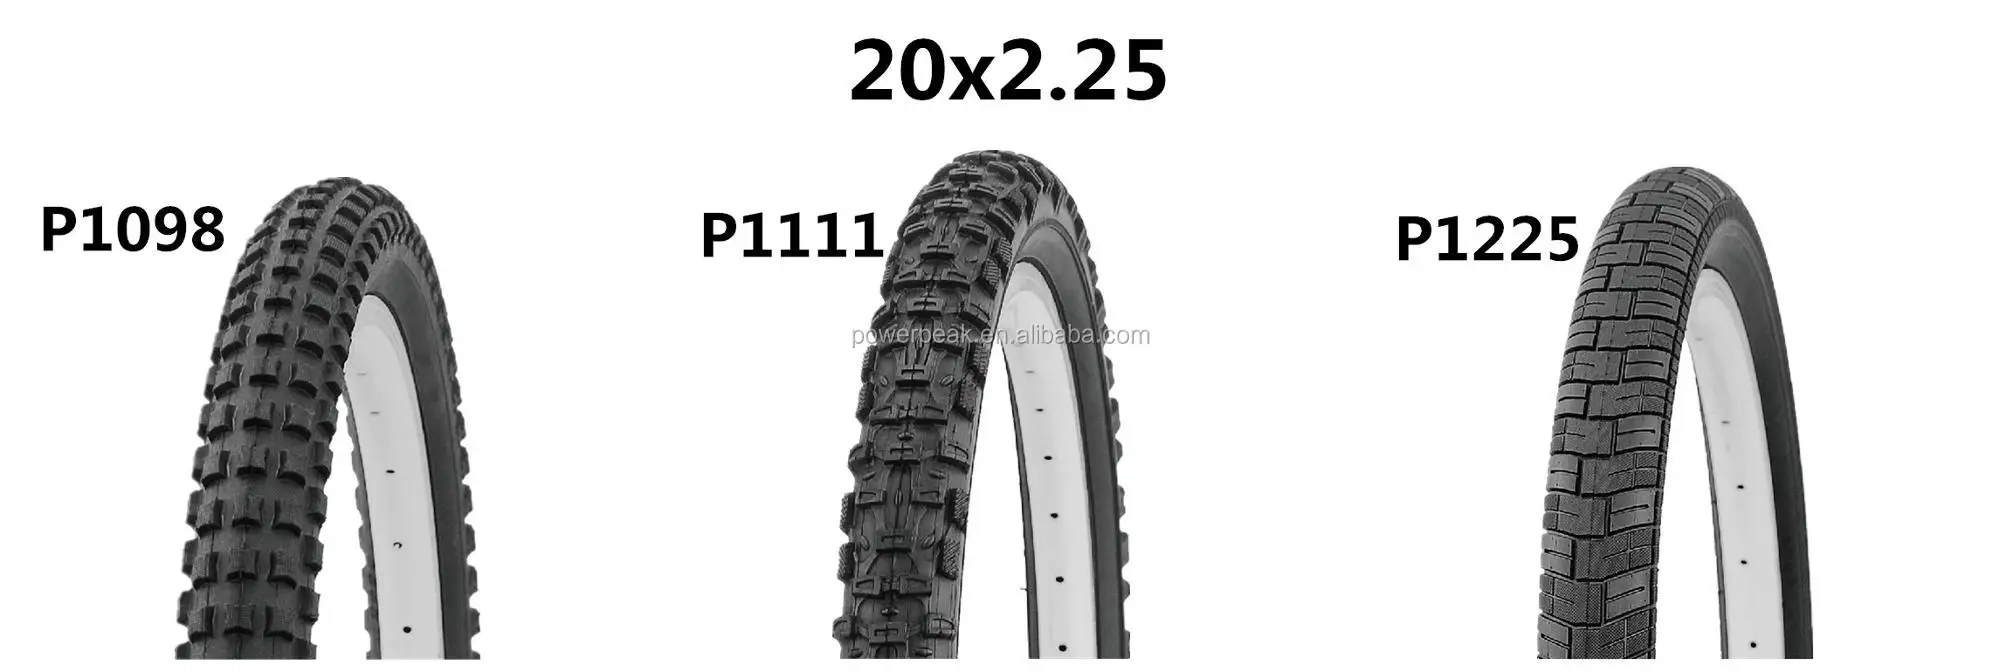 20x2 25 bike tire